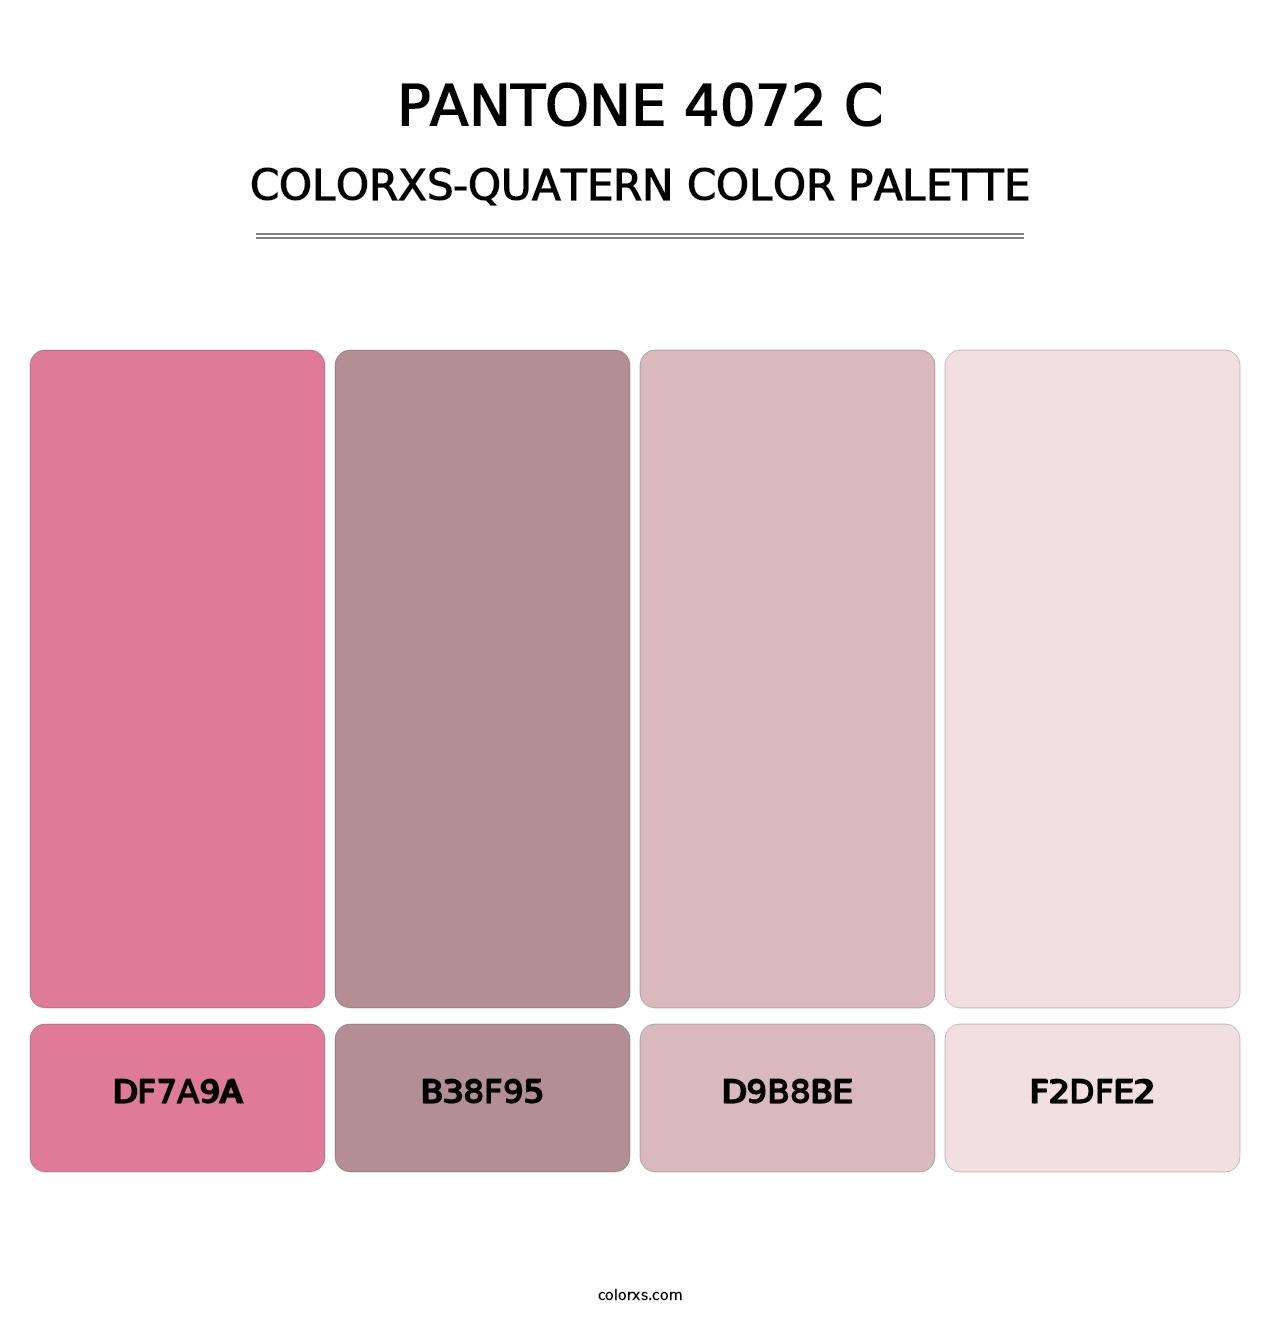 PANTONE 4072 C - Colorxs Quatern Palette